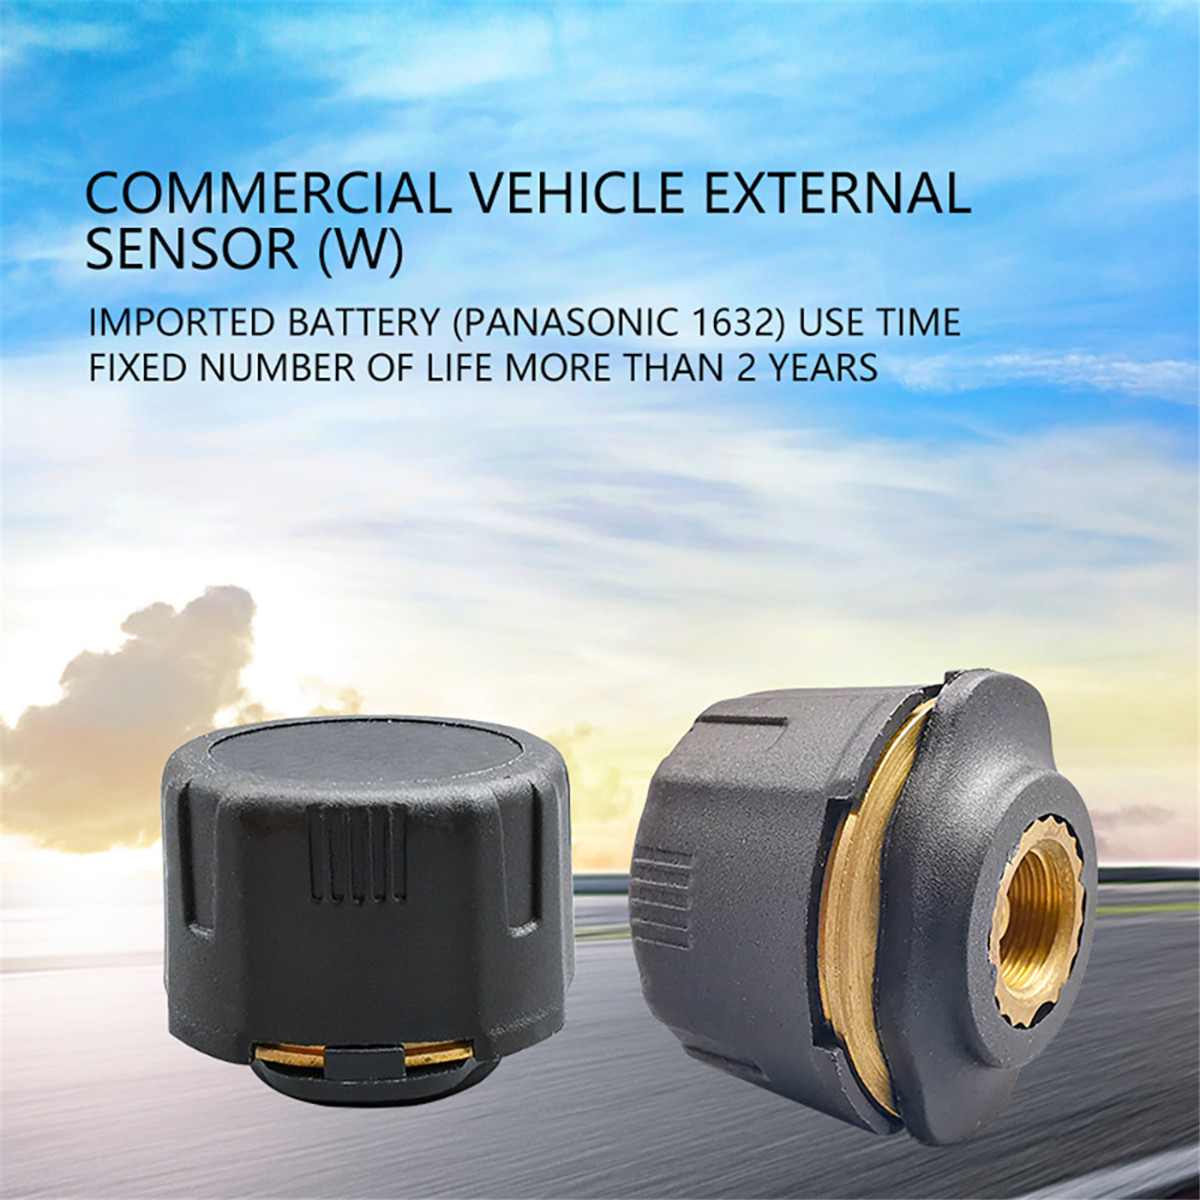 Kommersiële voertuig Eksterne sensor01 (11)